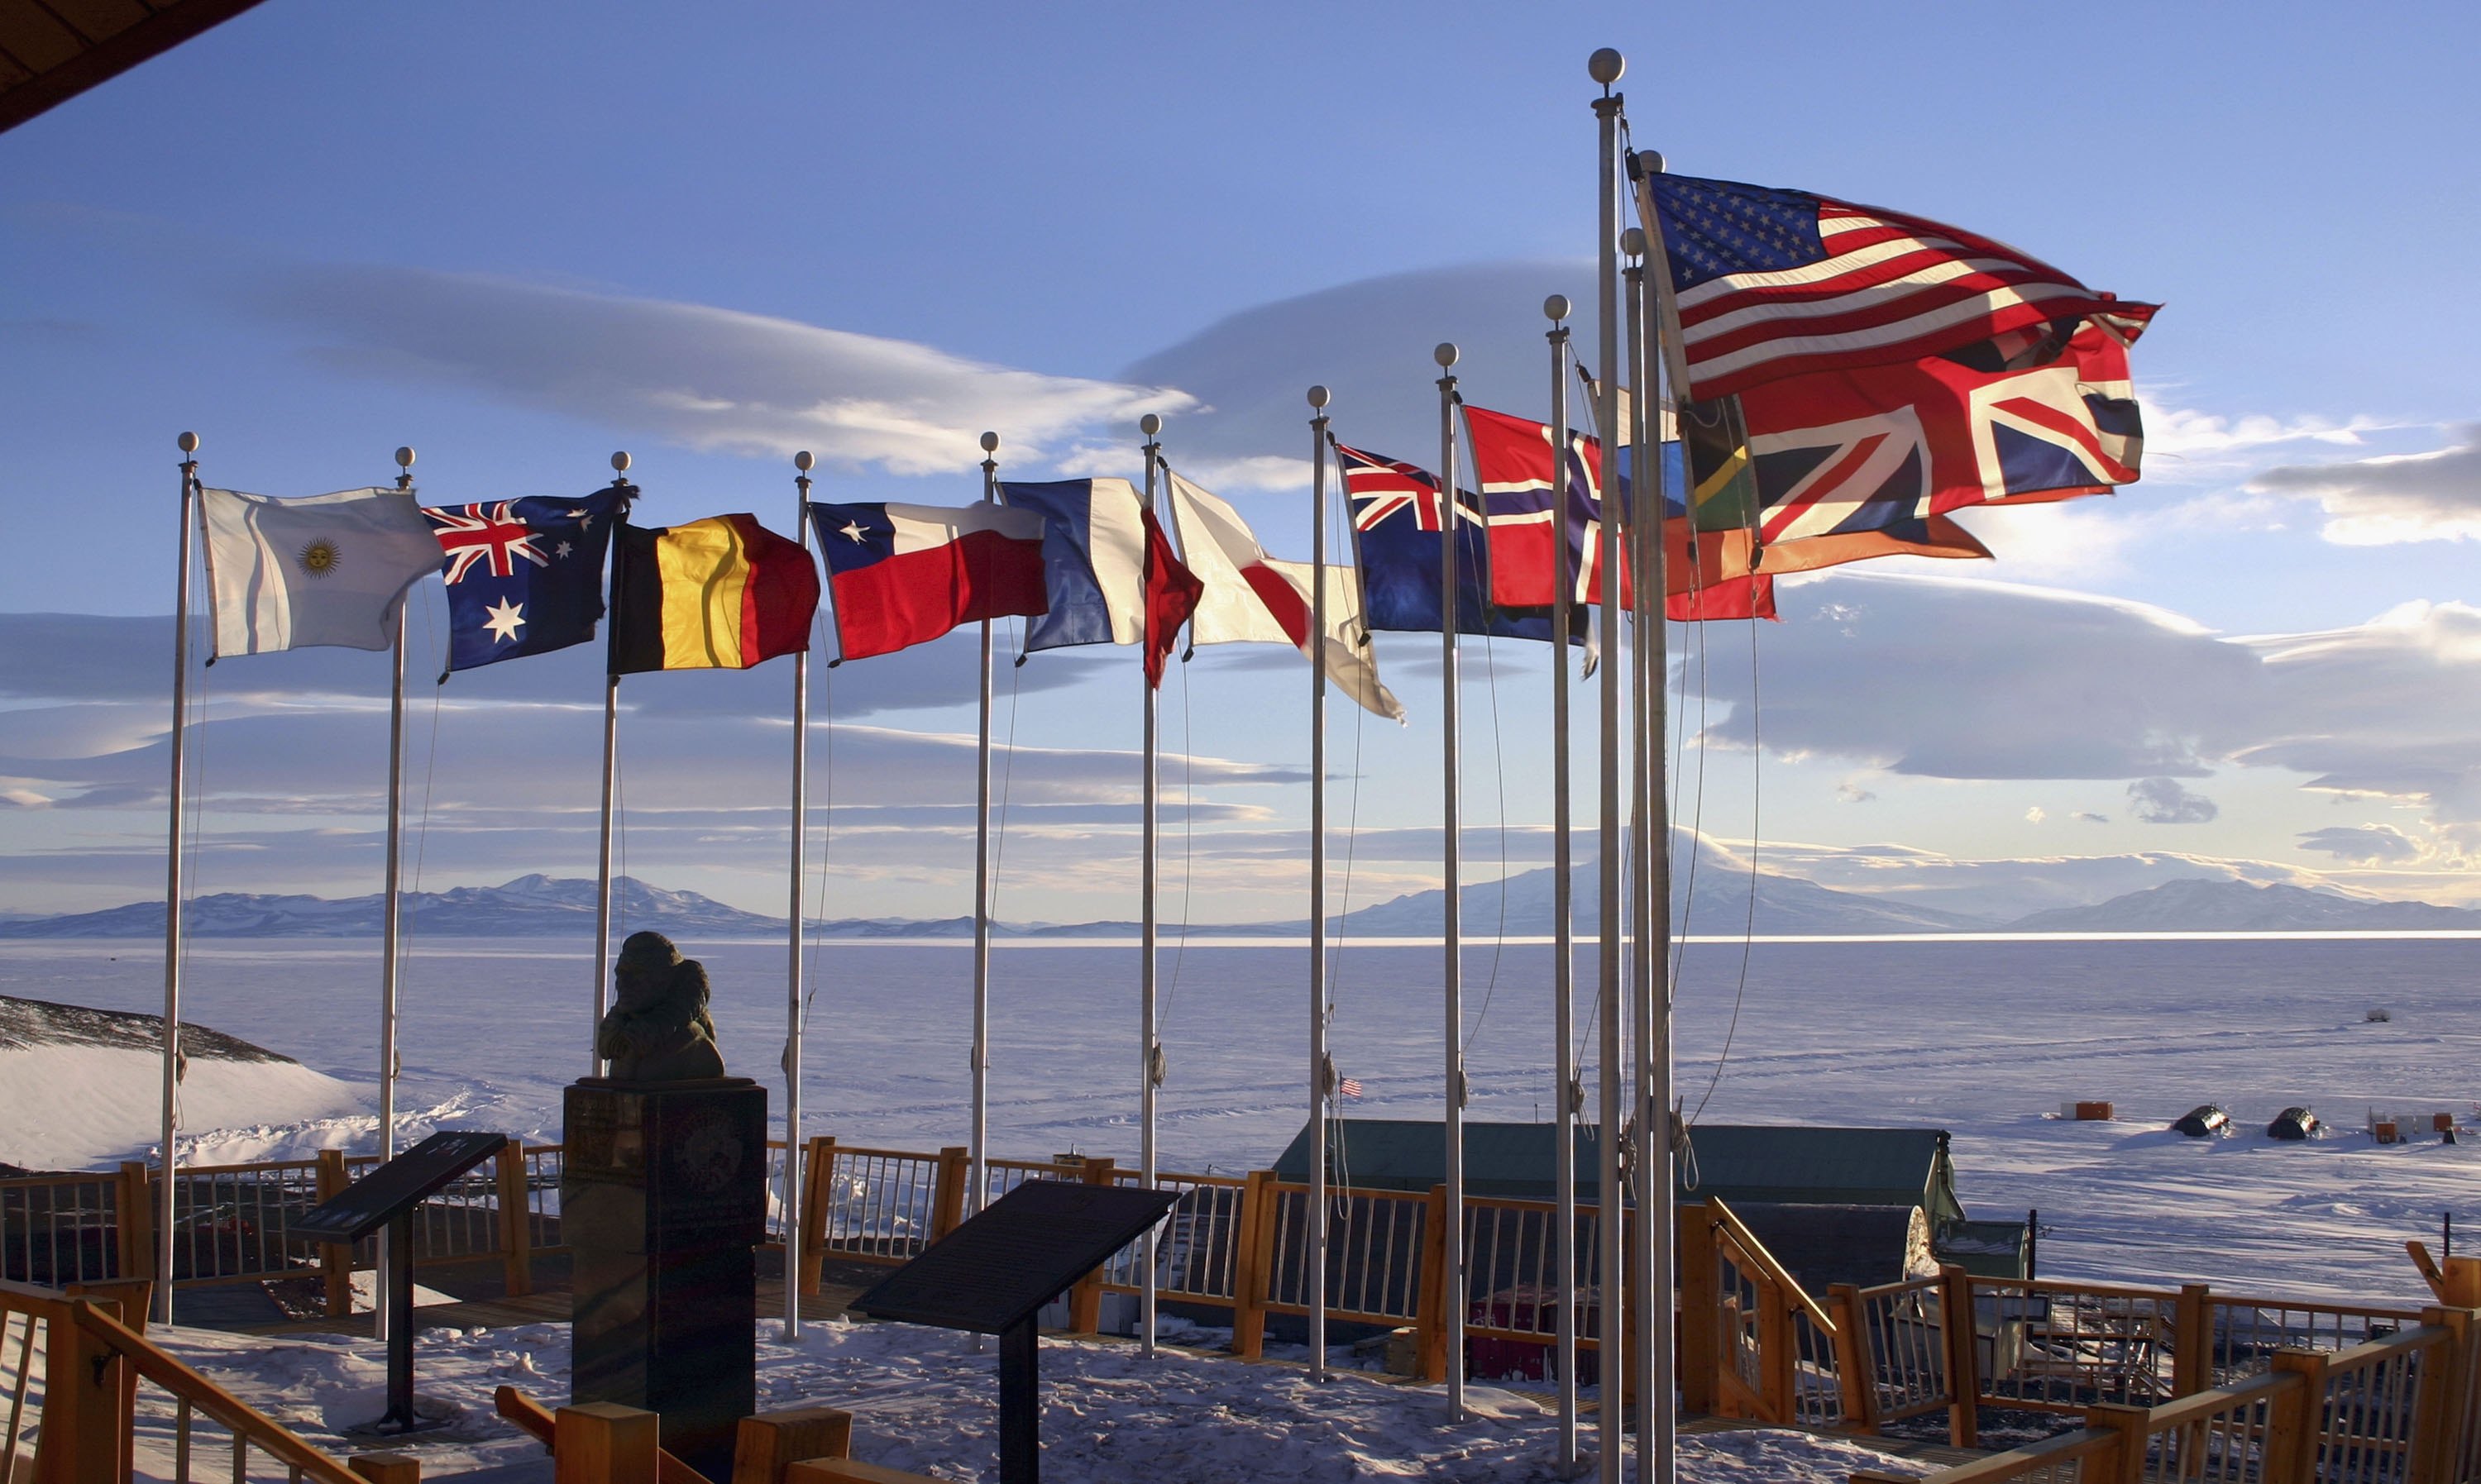 Kerry besucht als ranghöchster US-Vertreter die Antarktis + VIDEO